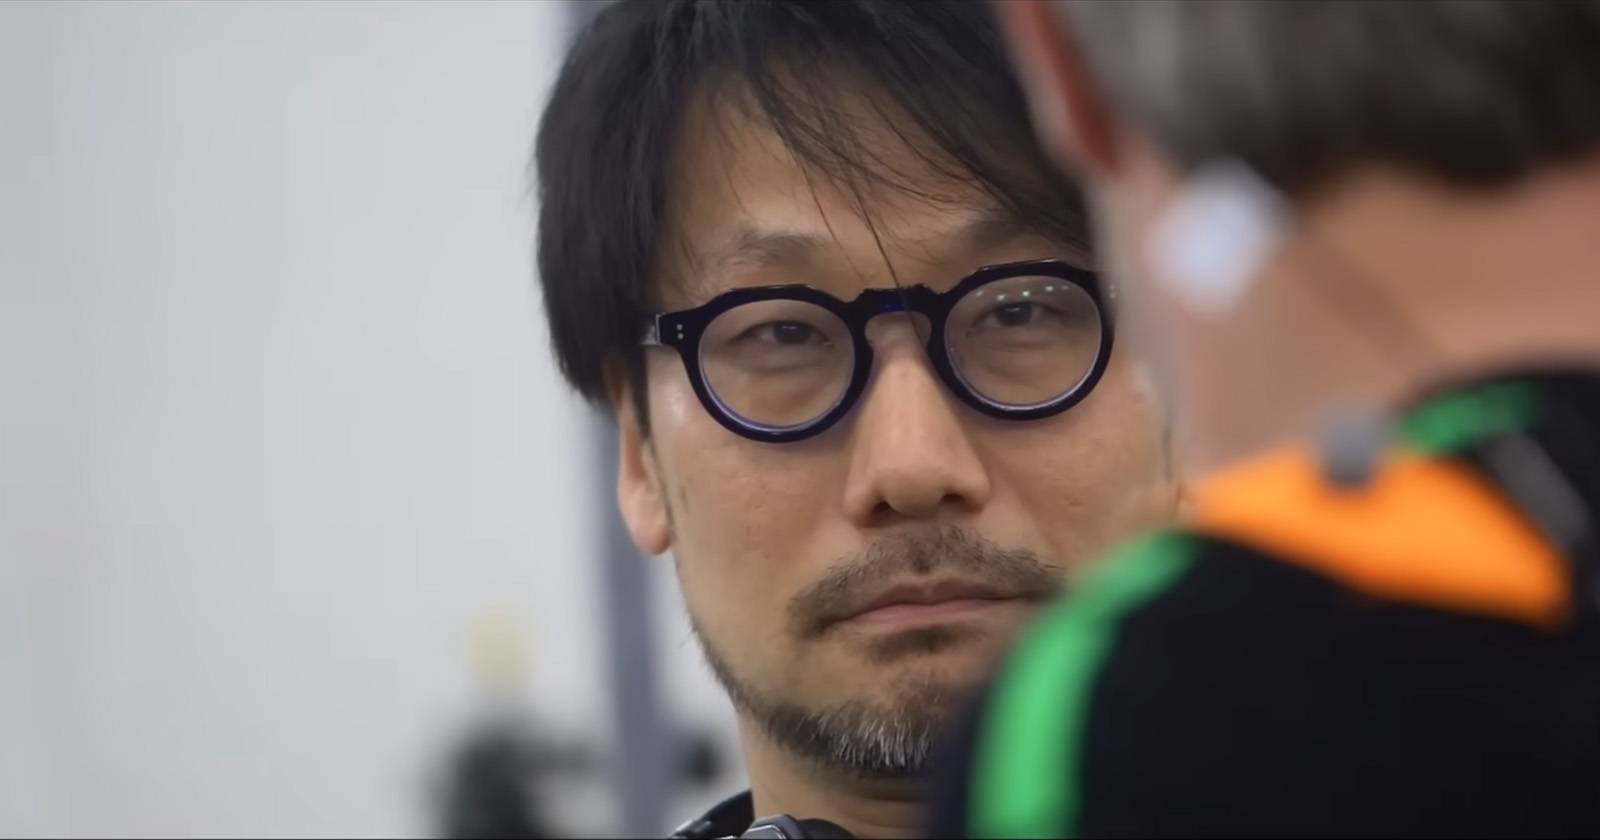 Oyun topluluğunun “delisi” Hideo Kojima’nın belgeseli geliyor! İşte çıkış tarihi